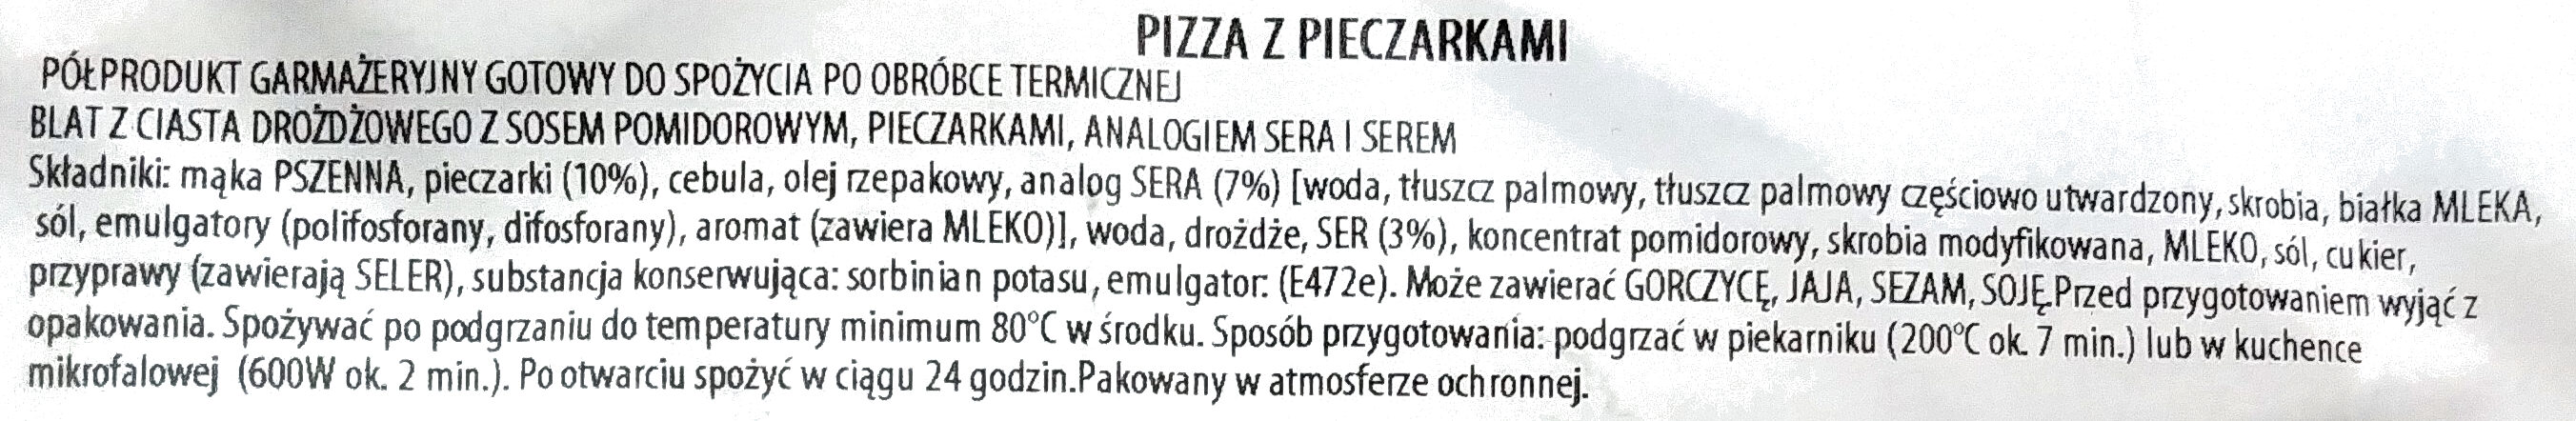 Pizza z pieczarkami - Ingrédients - pl